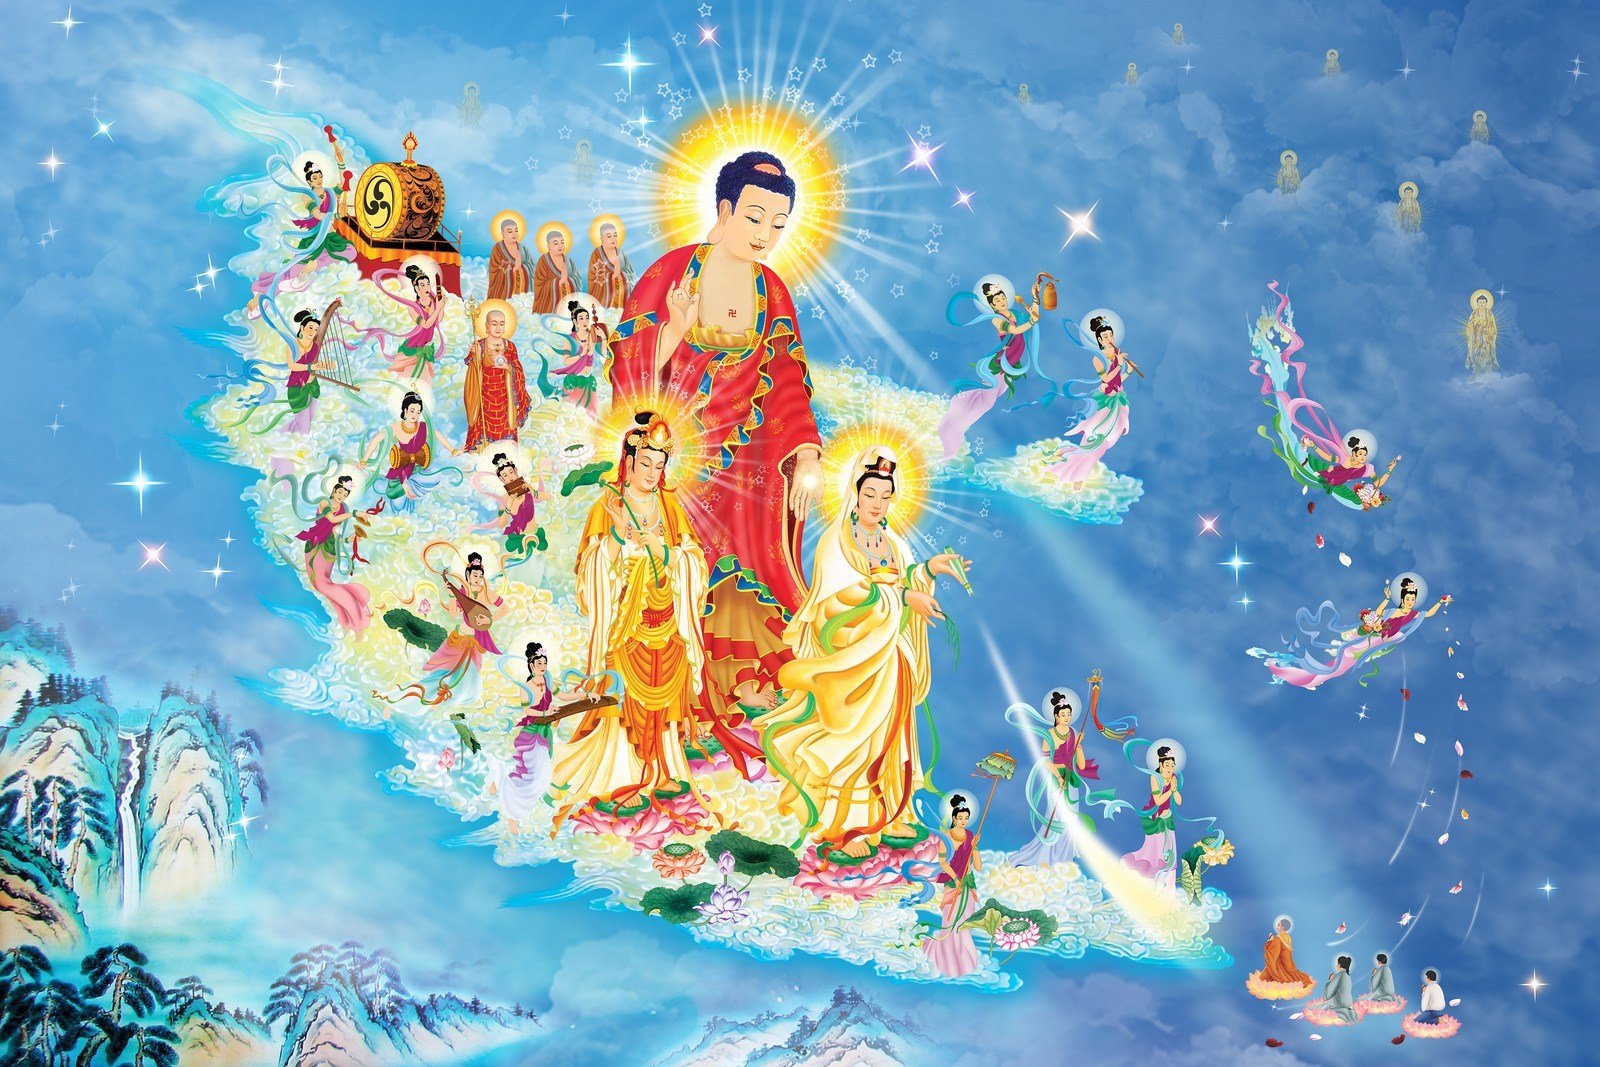 Hãy thưởng thức hình ảnh Đức Phật A Di Đà với trái tim tinh khiết và mở rộng tâm trí của bạn. Những bức tranh thiêng liêng này sẽ đem đến sự thanh thản và một cái nhìn mới về cuộc sống.